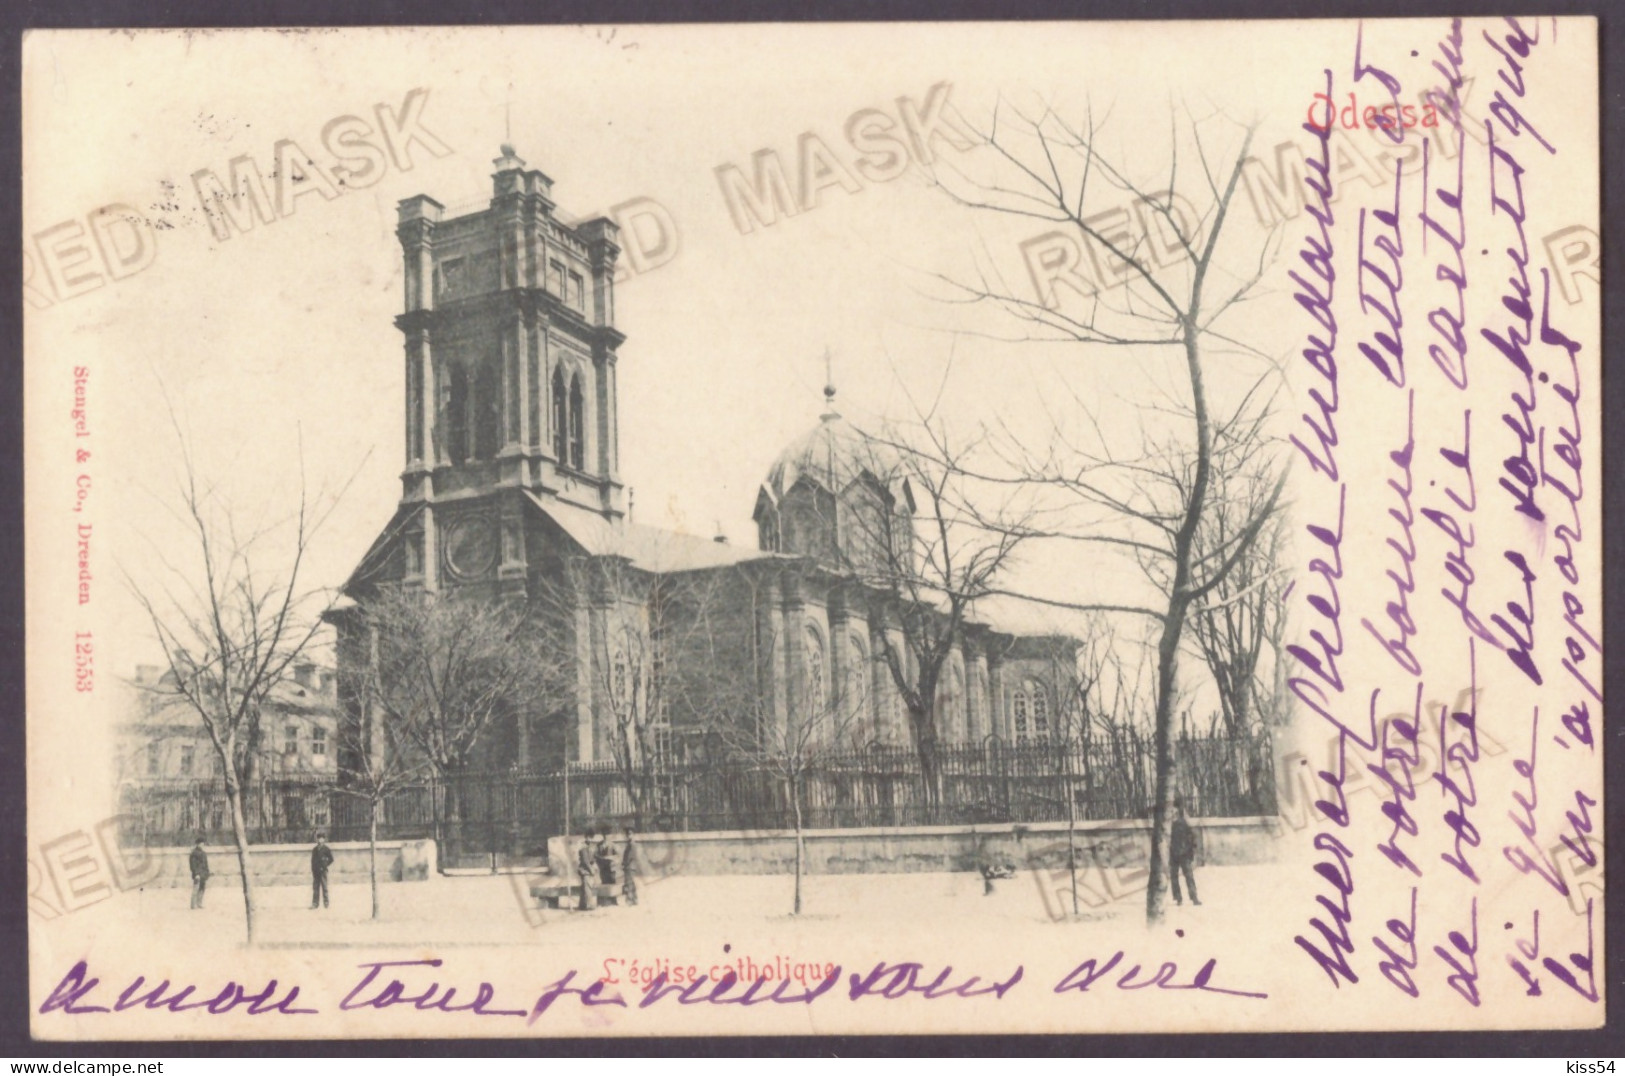 UK 42 - 22615 ODESSA, Catholic Church, Litho, Ukraine - Old Postcard - Used - 1901 - Ukraine